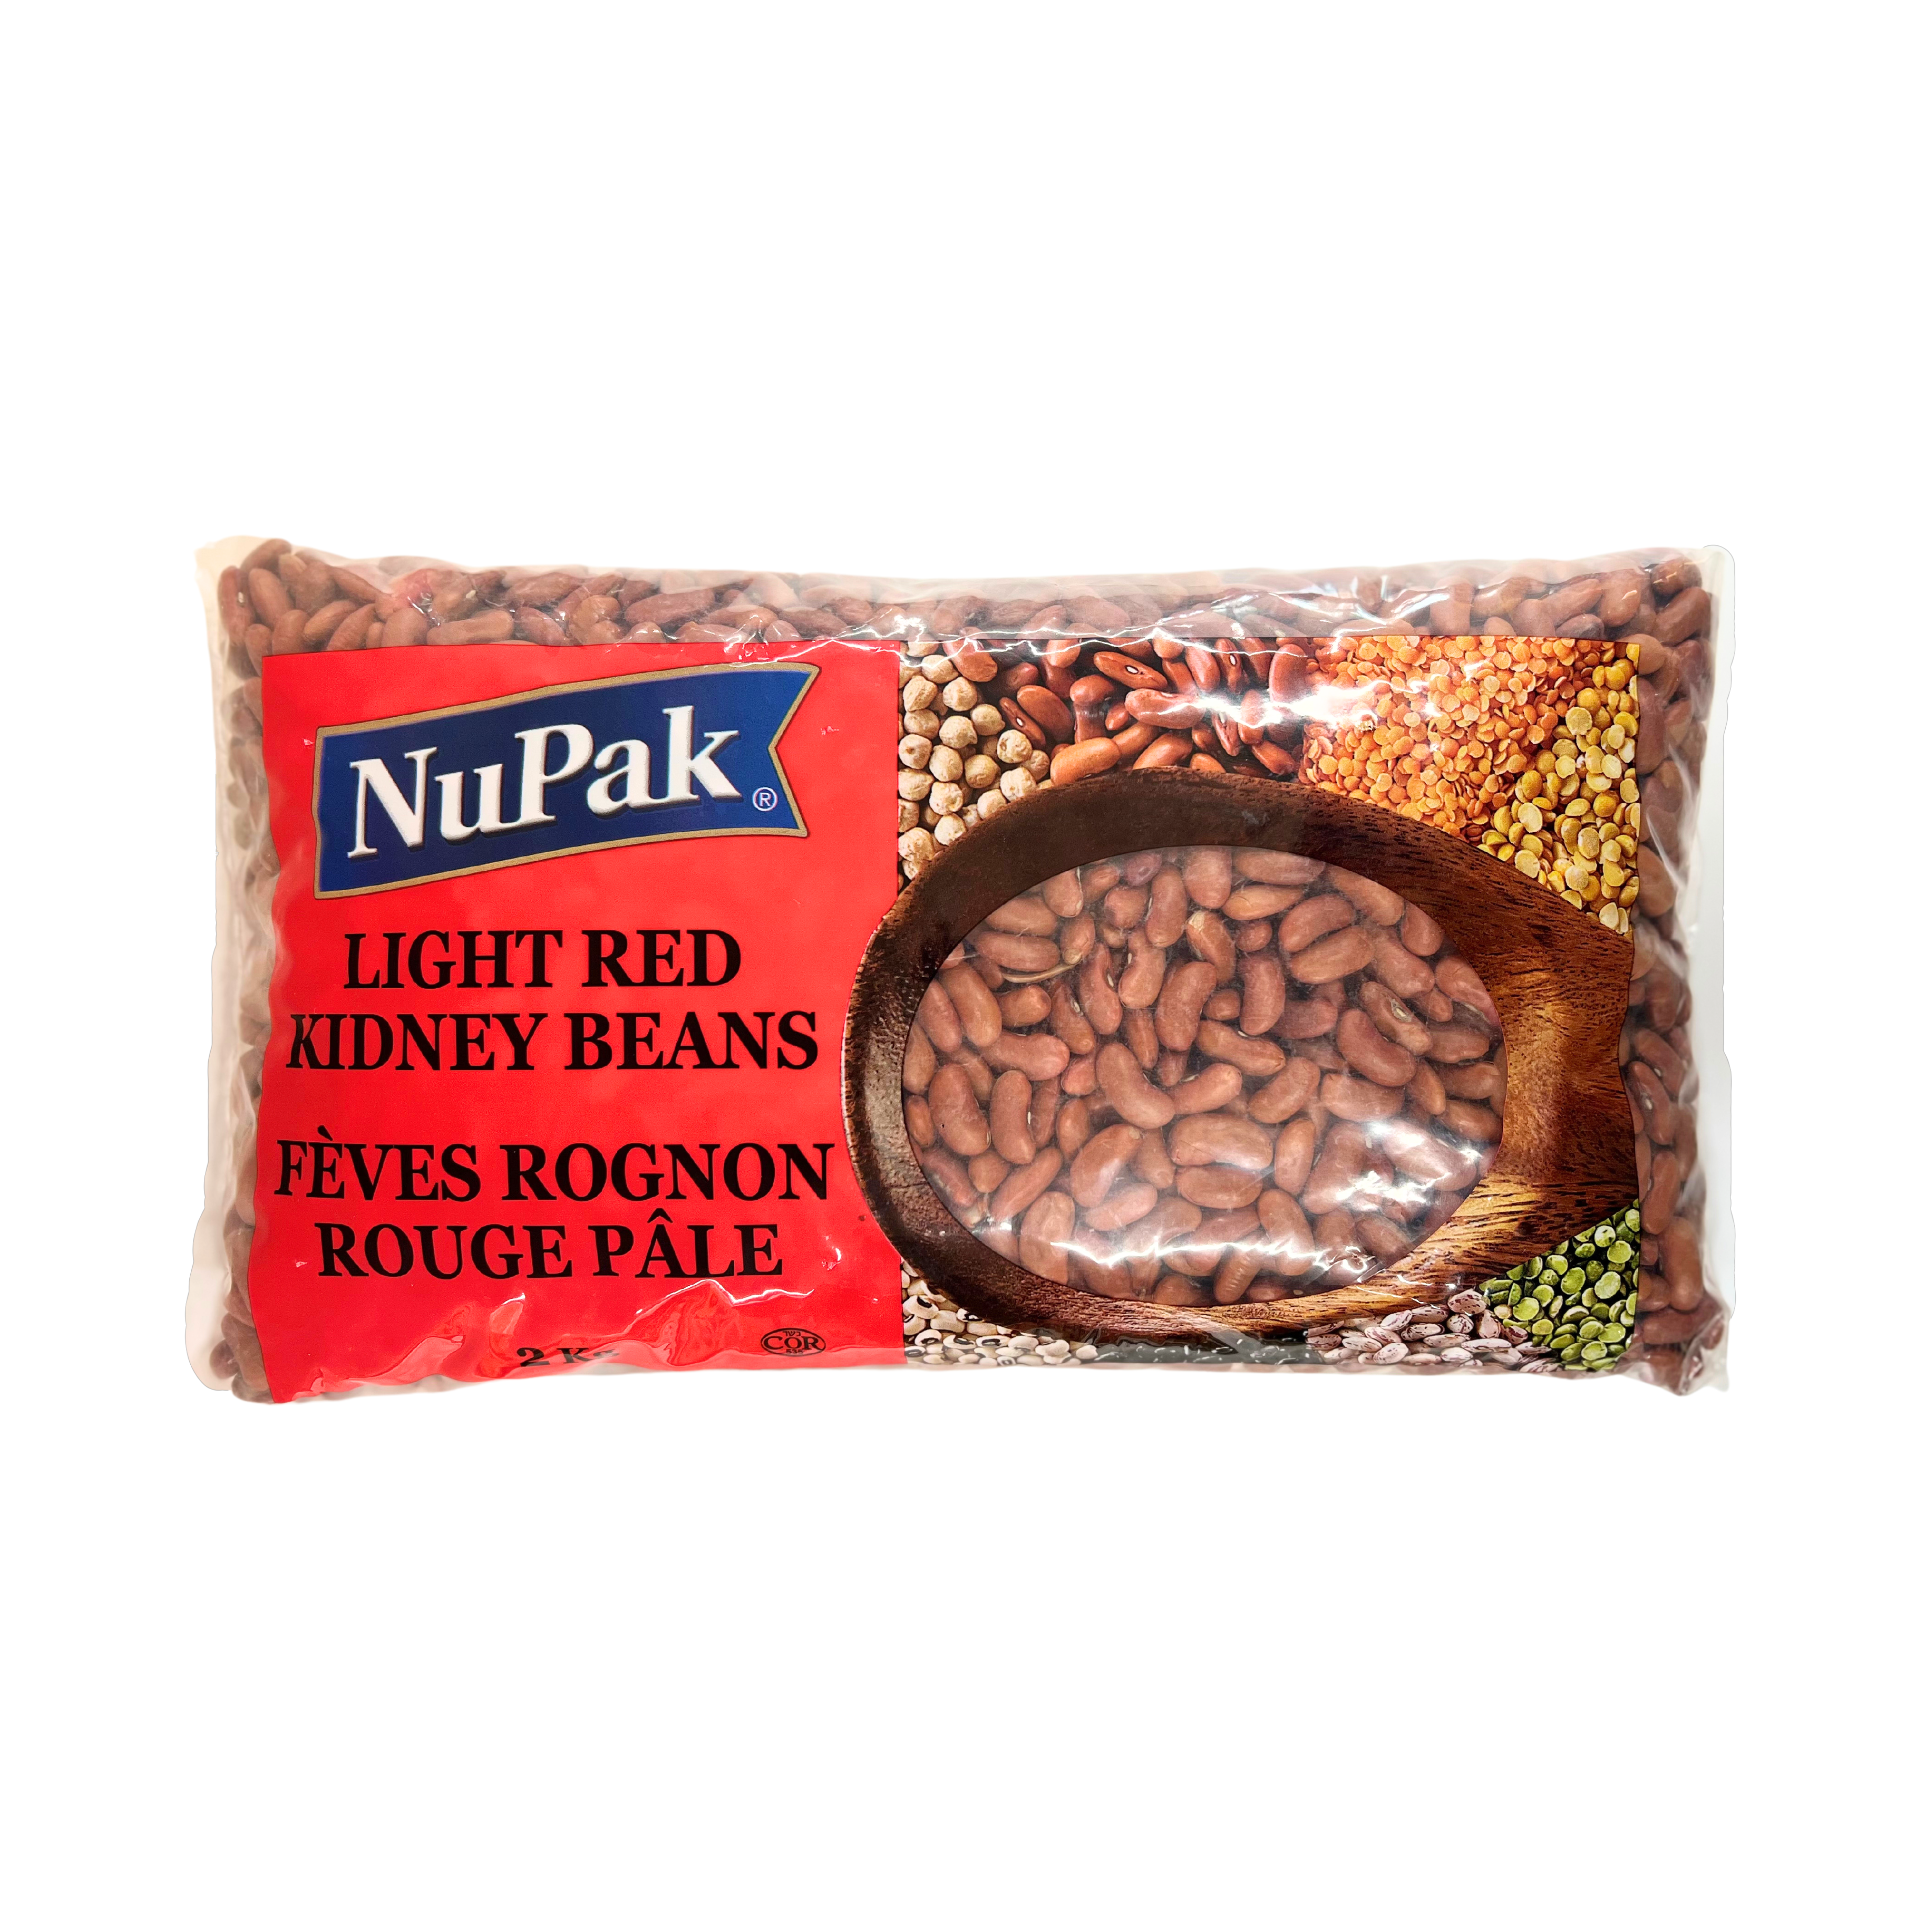 Nupak Light Red Kidney Beans 2Kg